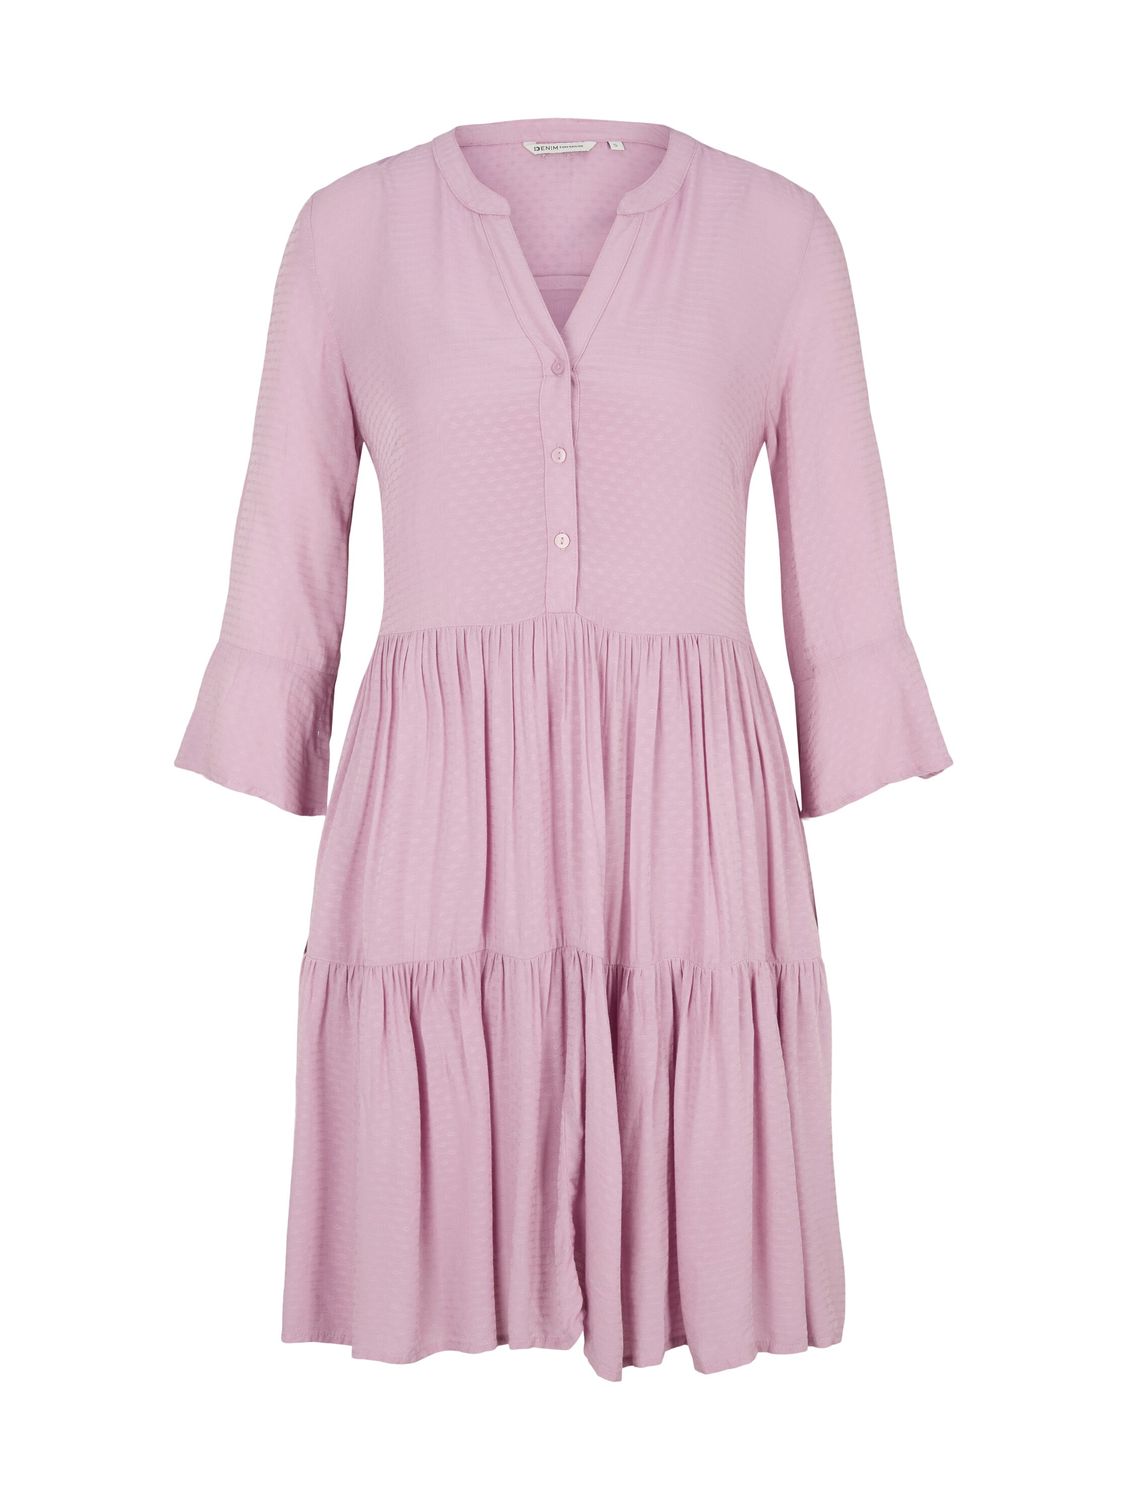 Платье TOM TAILOR Denim BABYDOLL, розовый платье розовое базовое tom tailor denim розовый